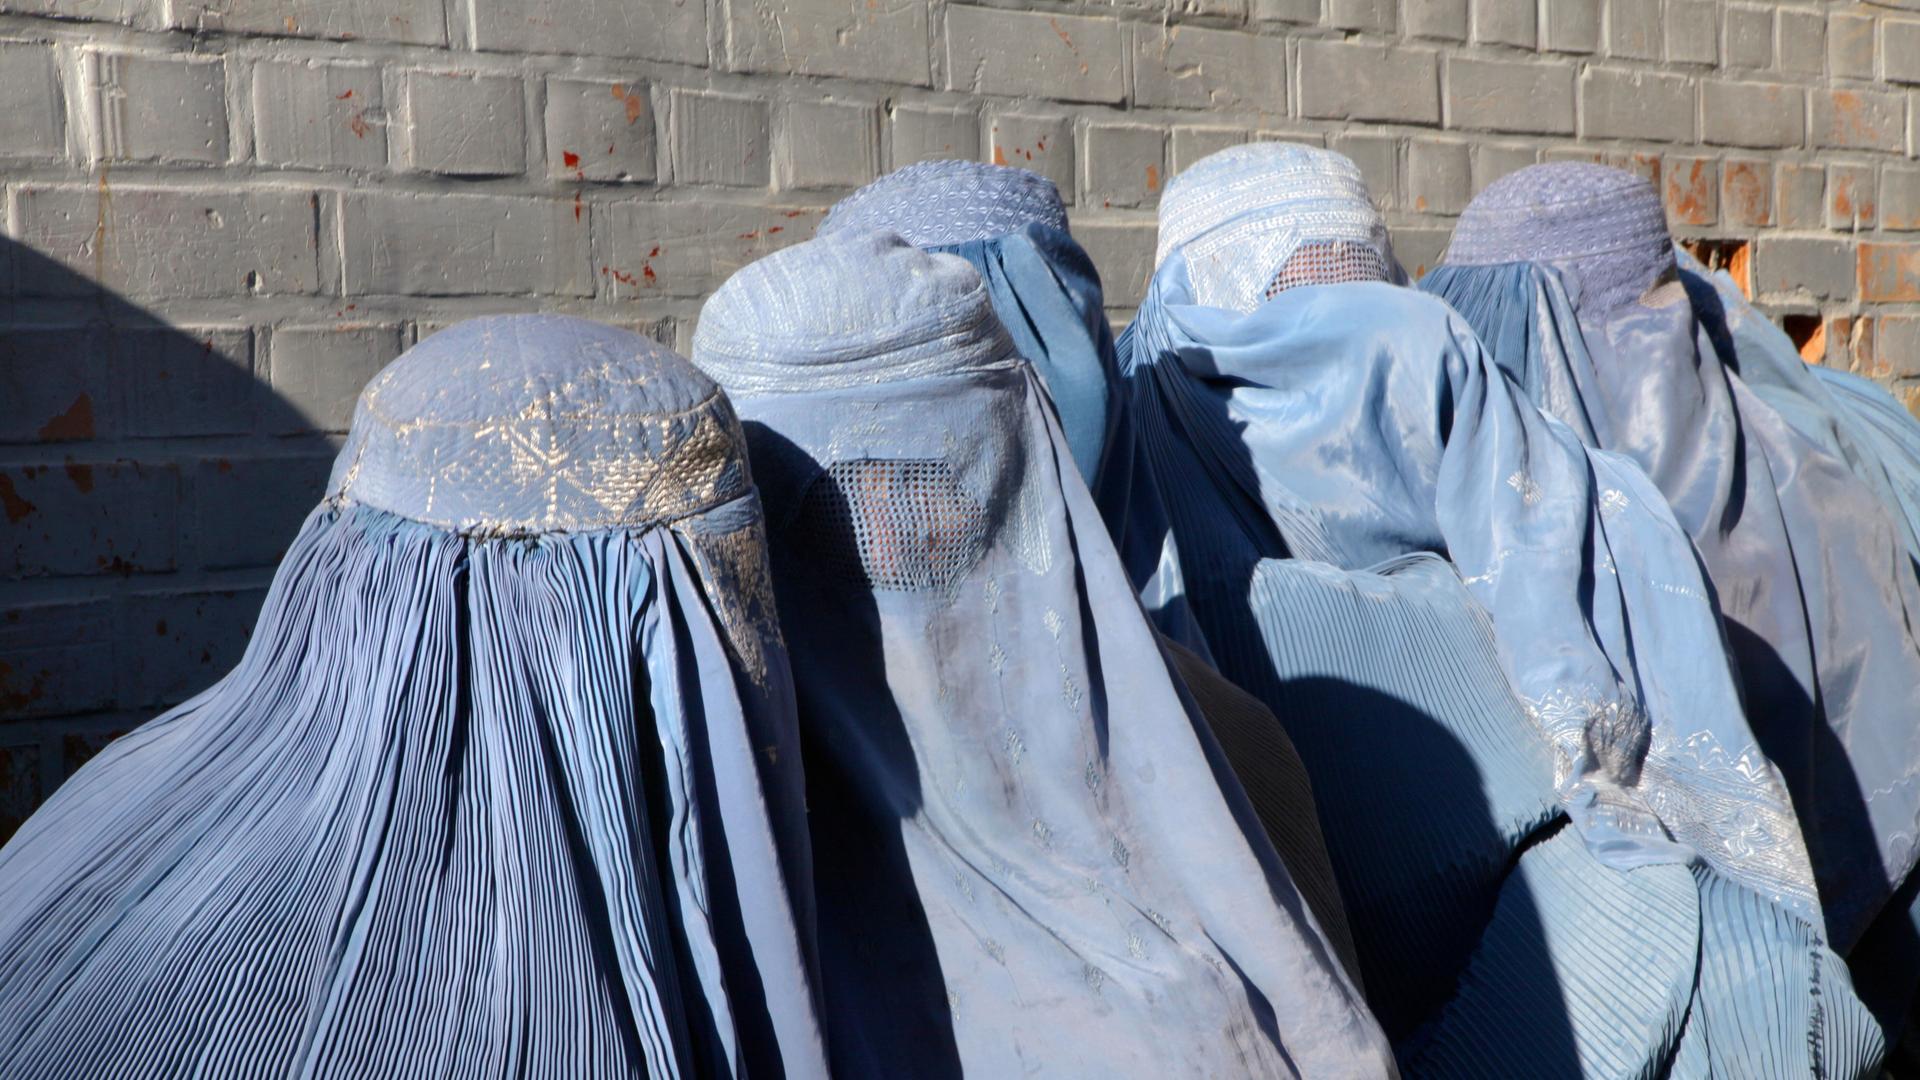 UNO-Sicherheitsrat - Taliban sollen Einschränkung von Frauenrechten zurücknehmen